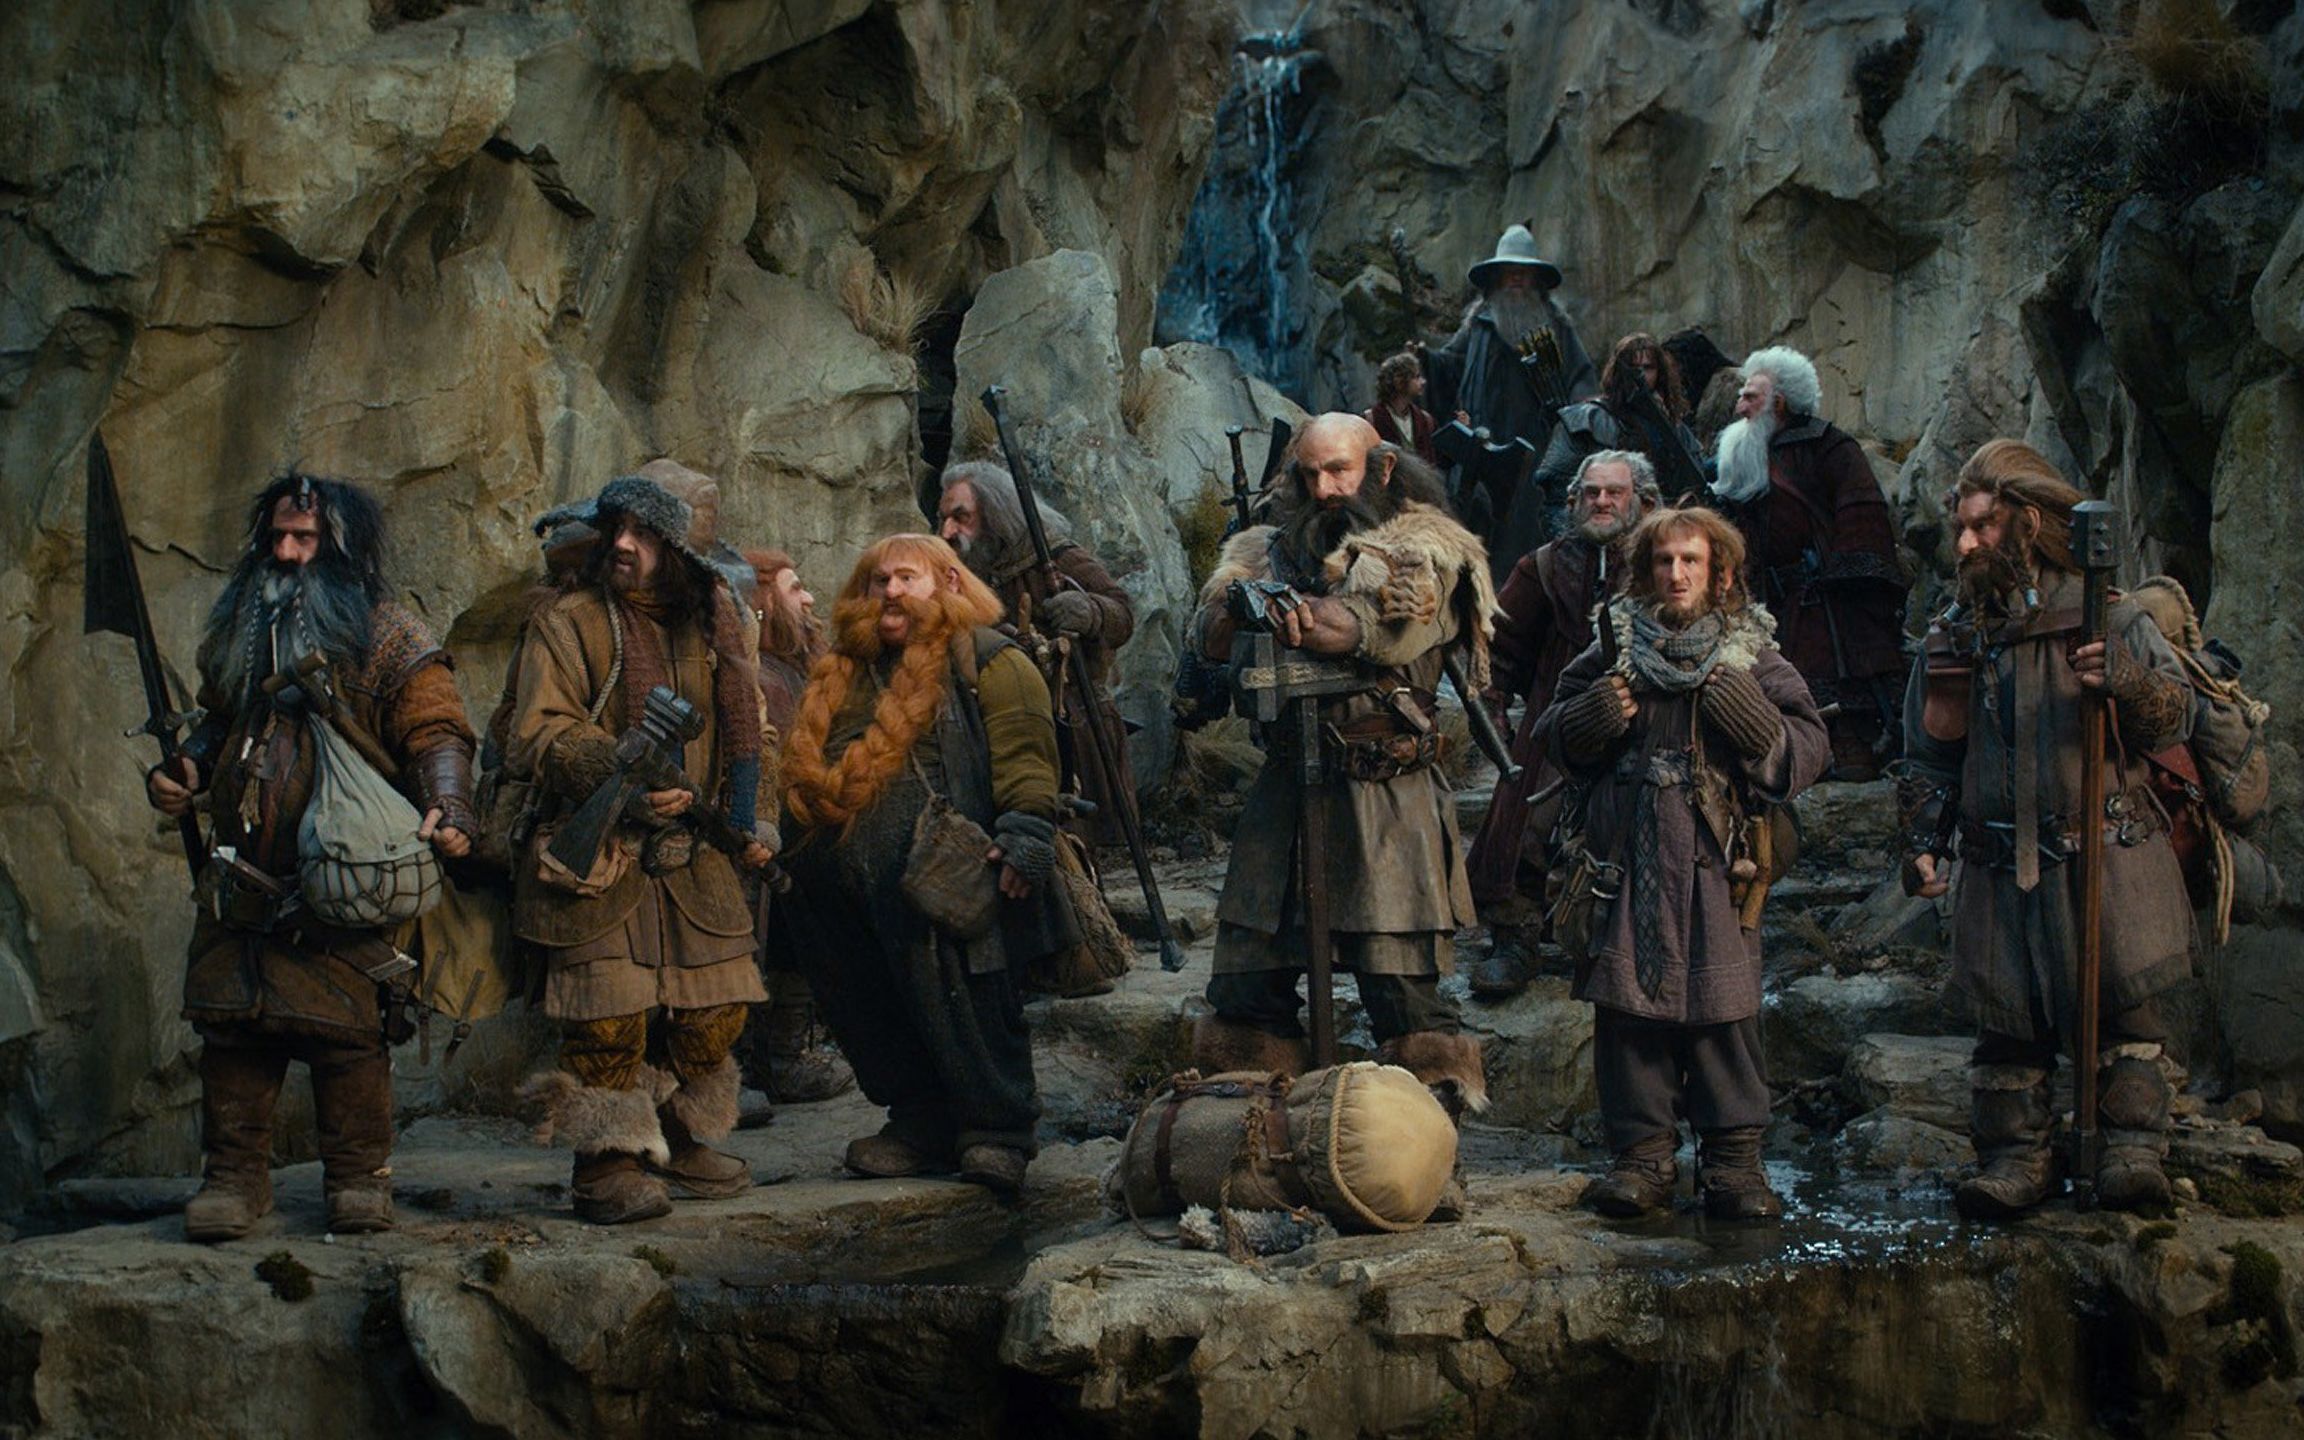 霍比特人1上半部,比尔博意外卷入矮人和巫师的冒险之旅